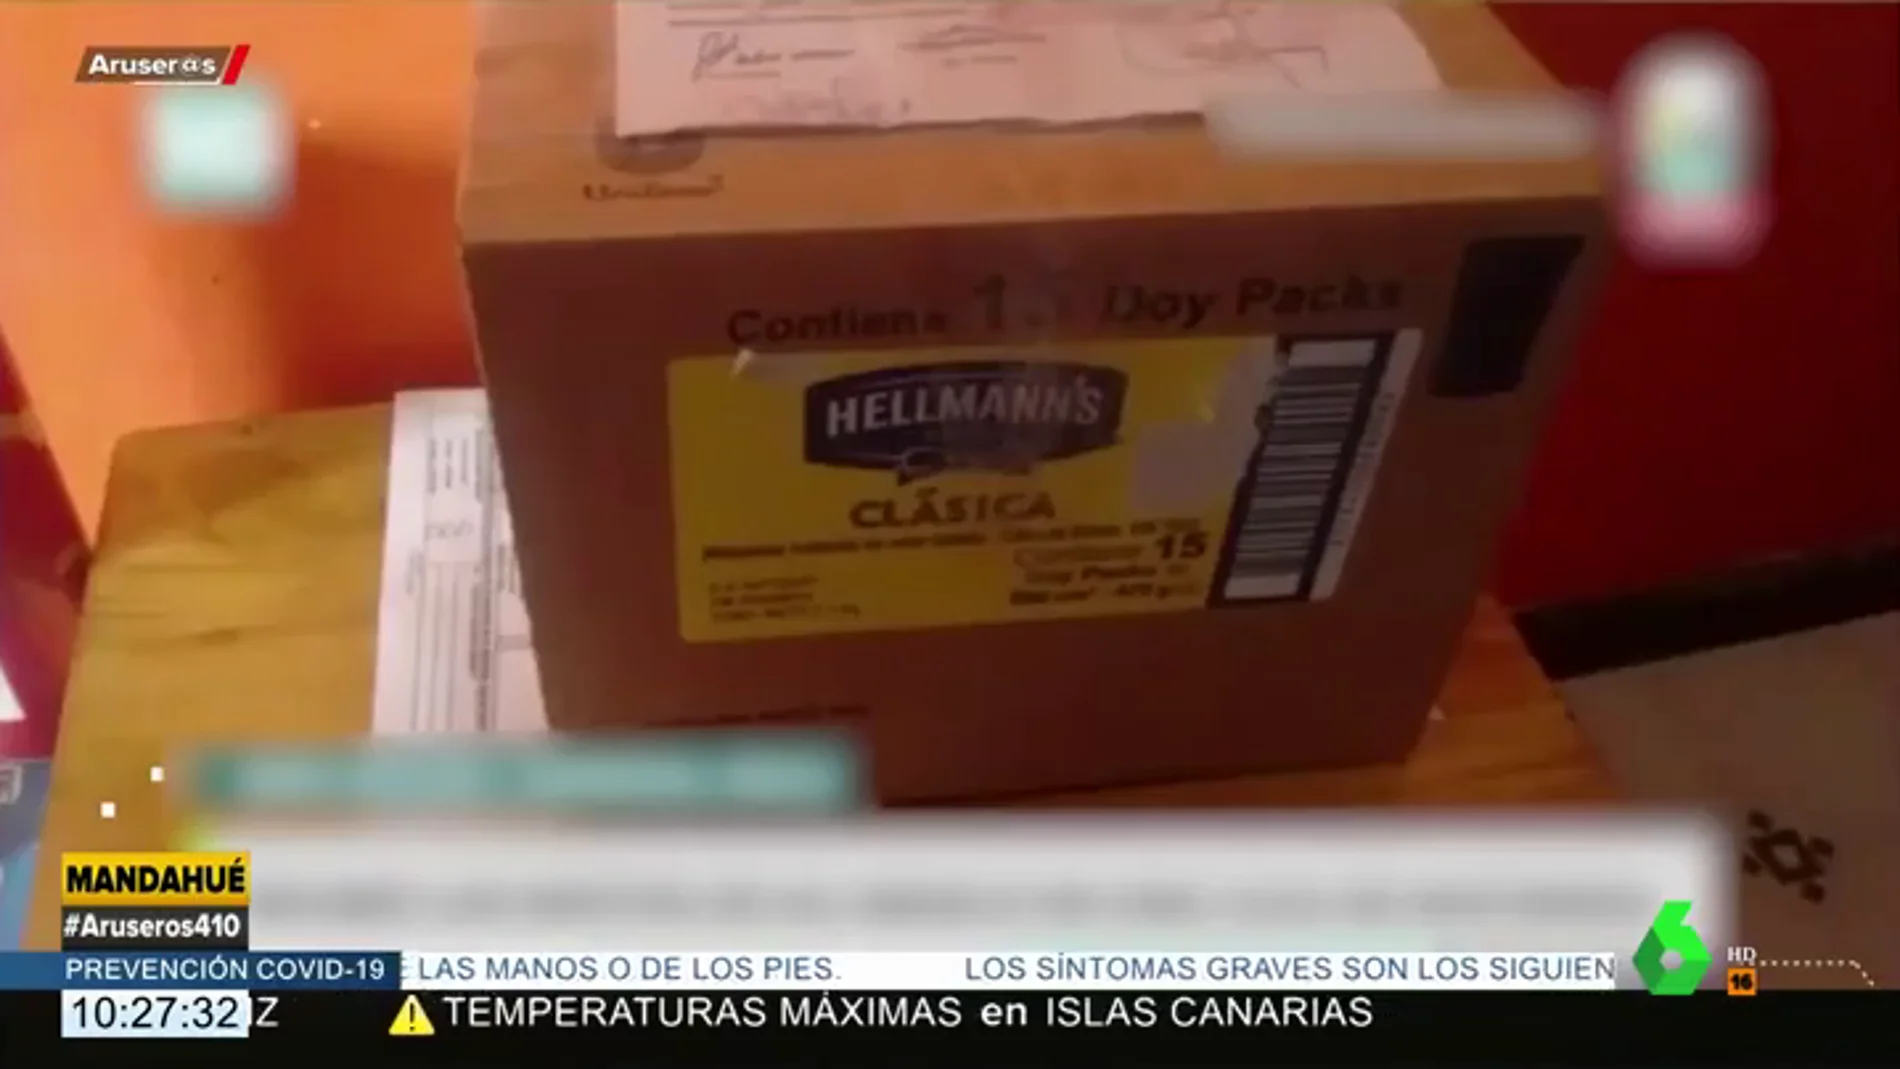 La indignación de una mujer a la que entregan los restos de su abuelo en una caja de mayonesa: "¿Se puede ser más basura?"